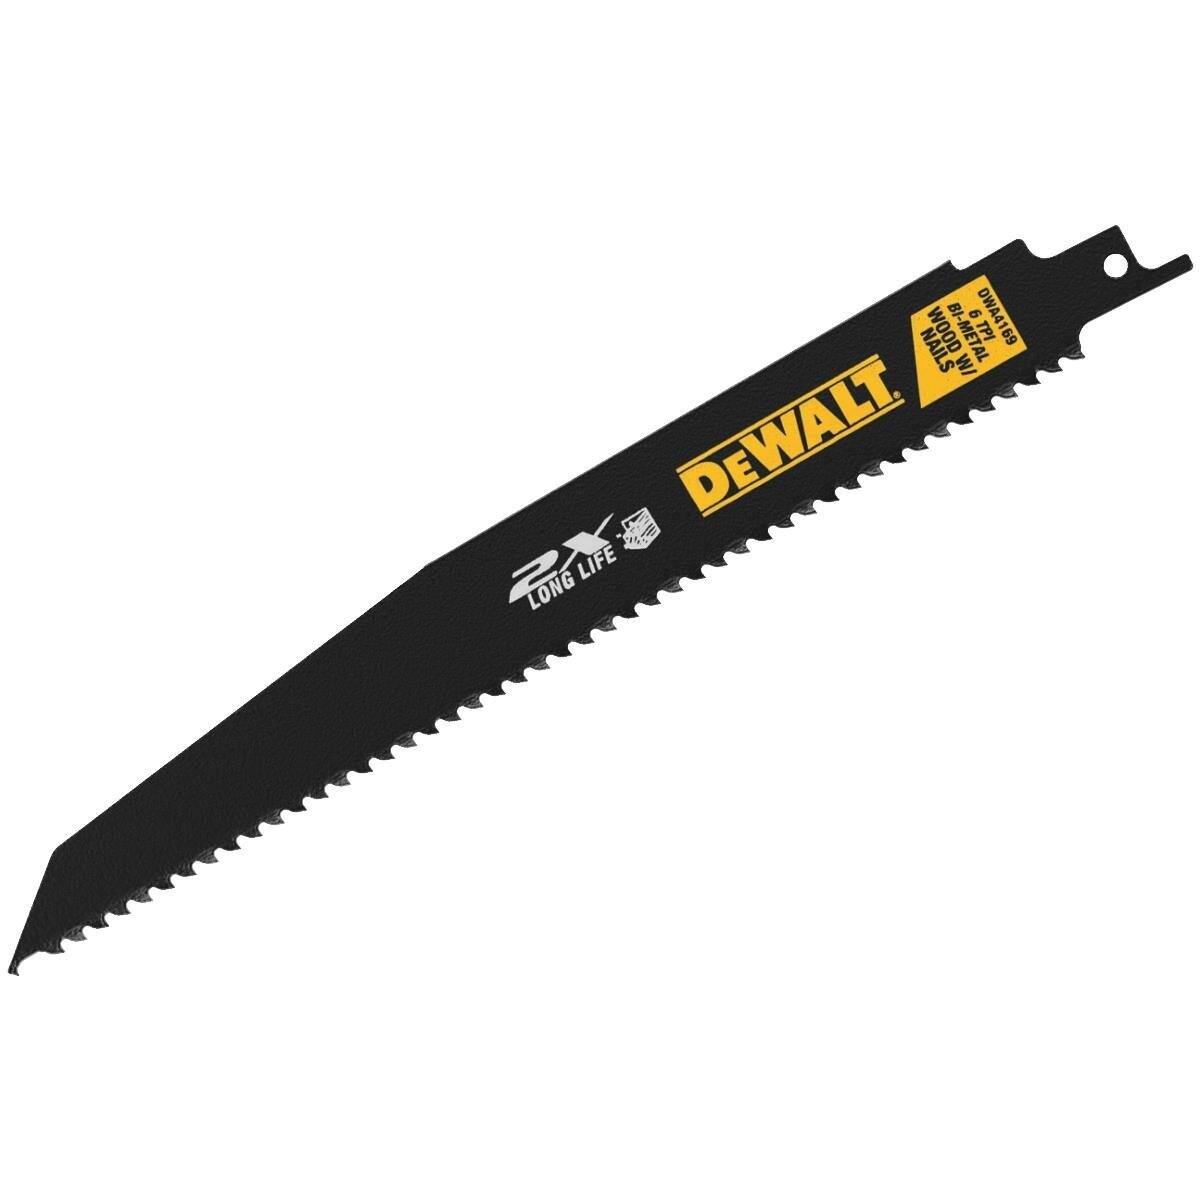 DeWALT® 6 TPI Tapered Back Reciprocating Saw Blade, 9